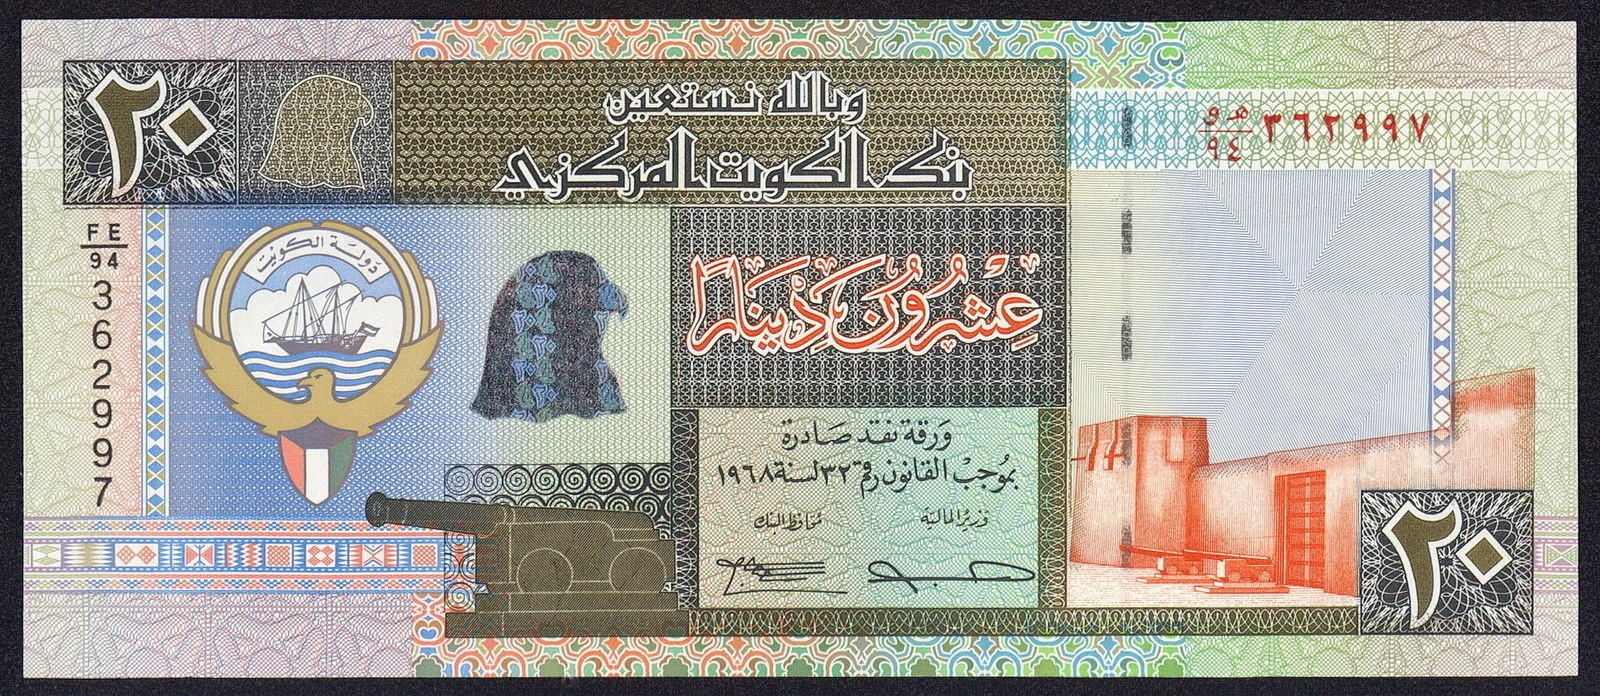 Kuwait money 20 Kuwaiti Dinar banknote 1994